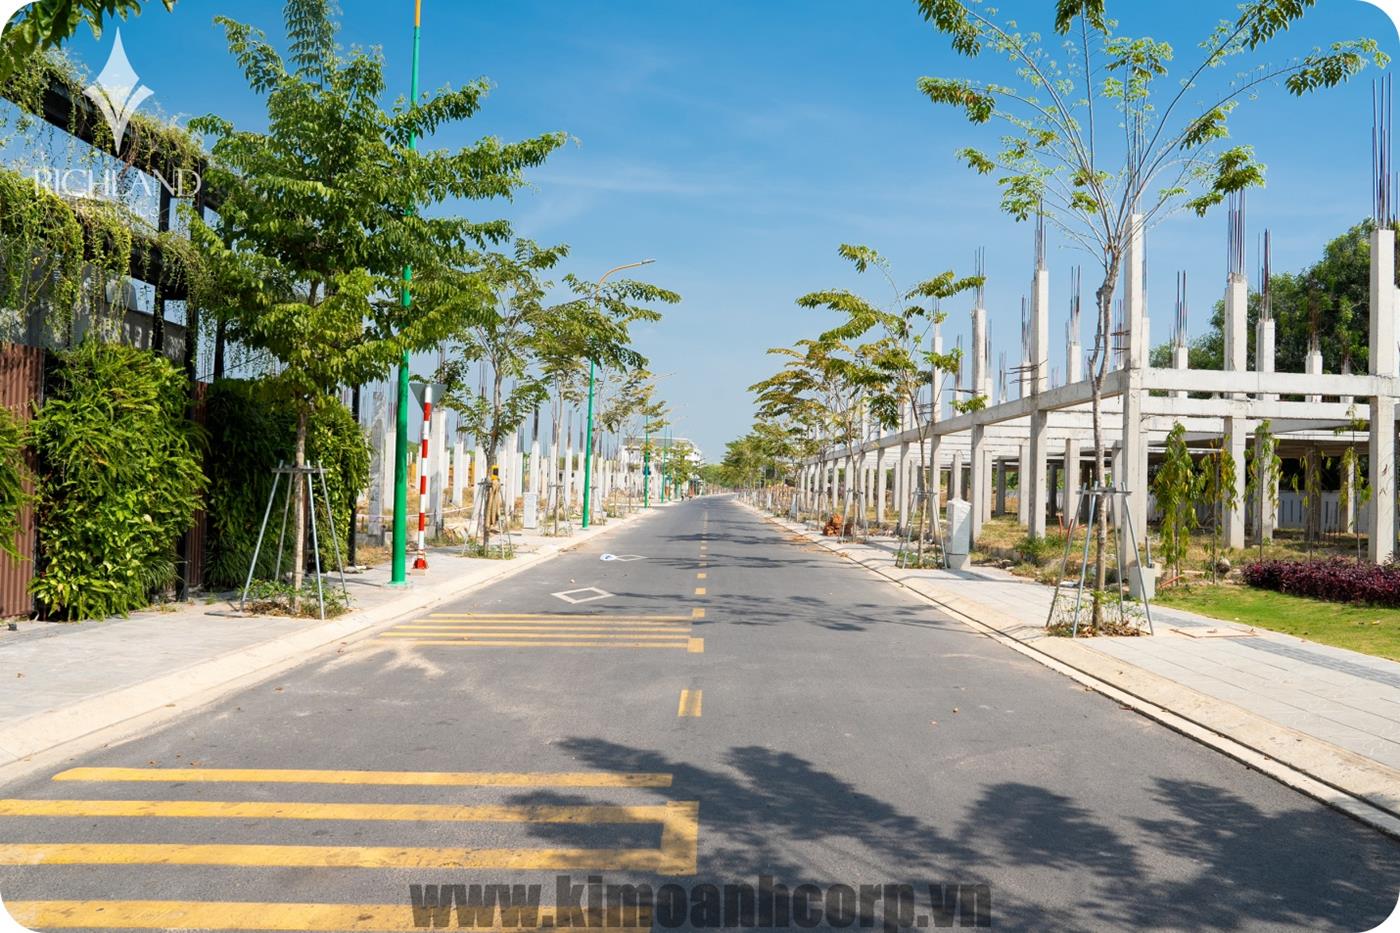 Trục đường chính của dự án được xây dựng chỉn chu, trải nhựa và phủ nhiều cây xanh hứa hẹn mang đến không gian sống trong lành cho các cư dân tương lai.